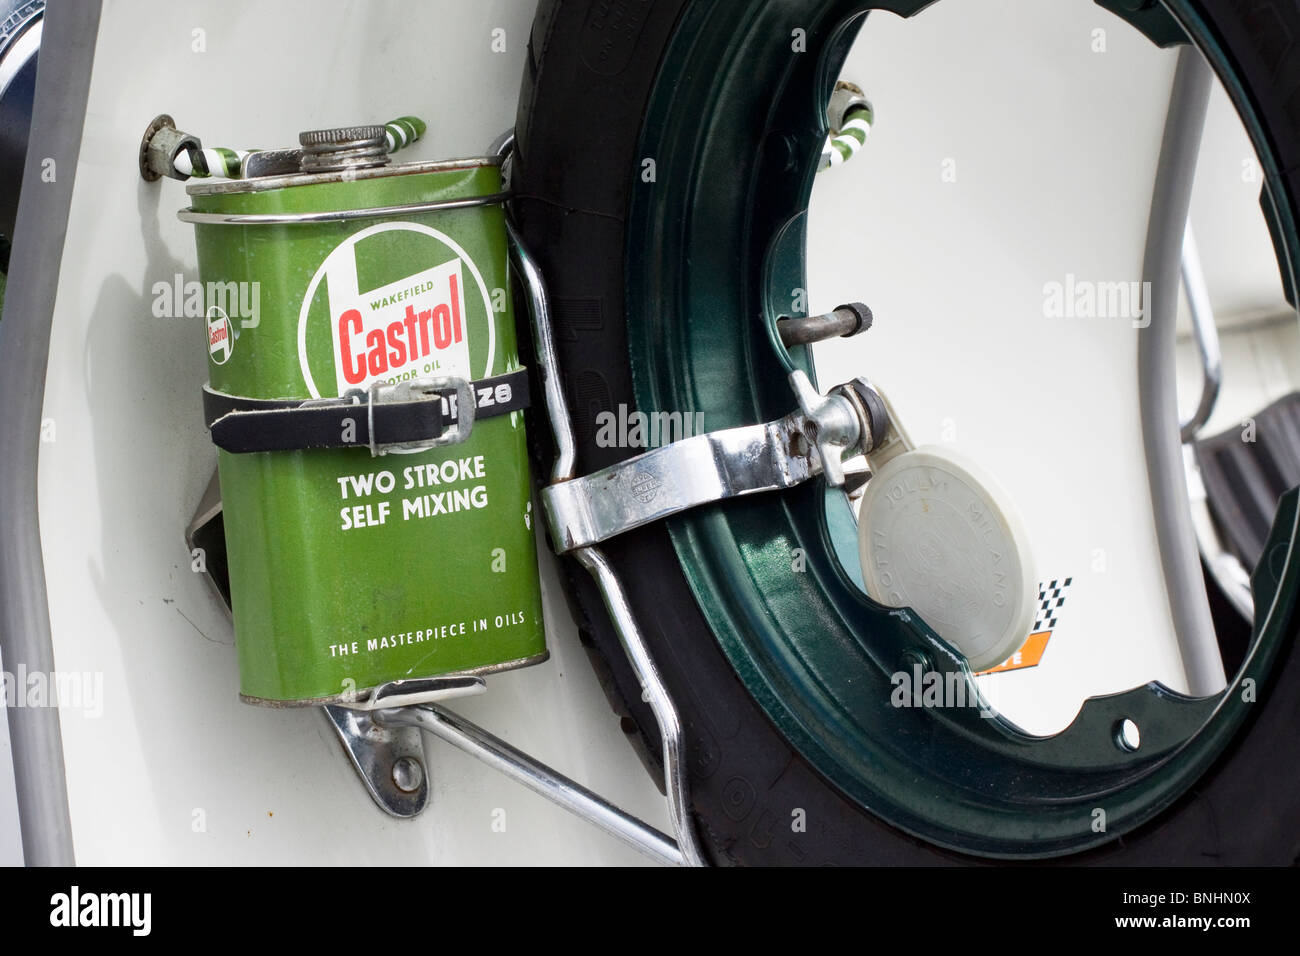 Un ciclomotor Vespa con una lata de aceite Castrol Foto de stock